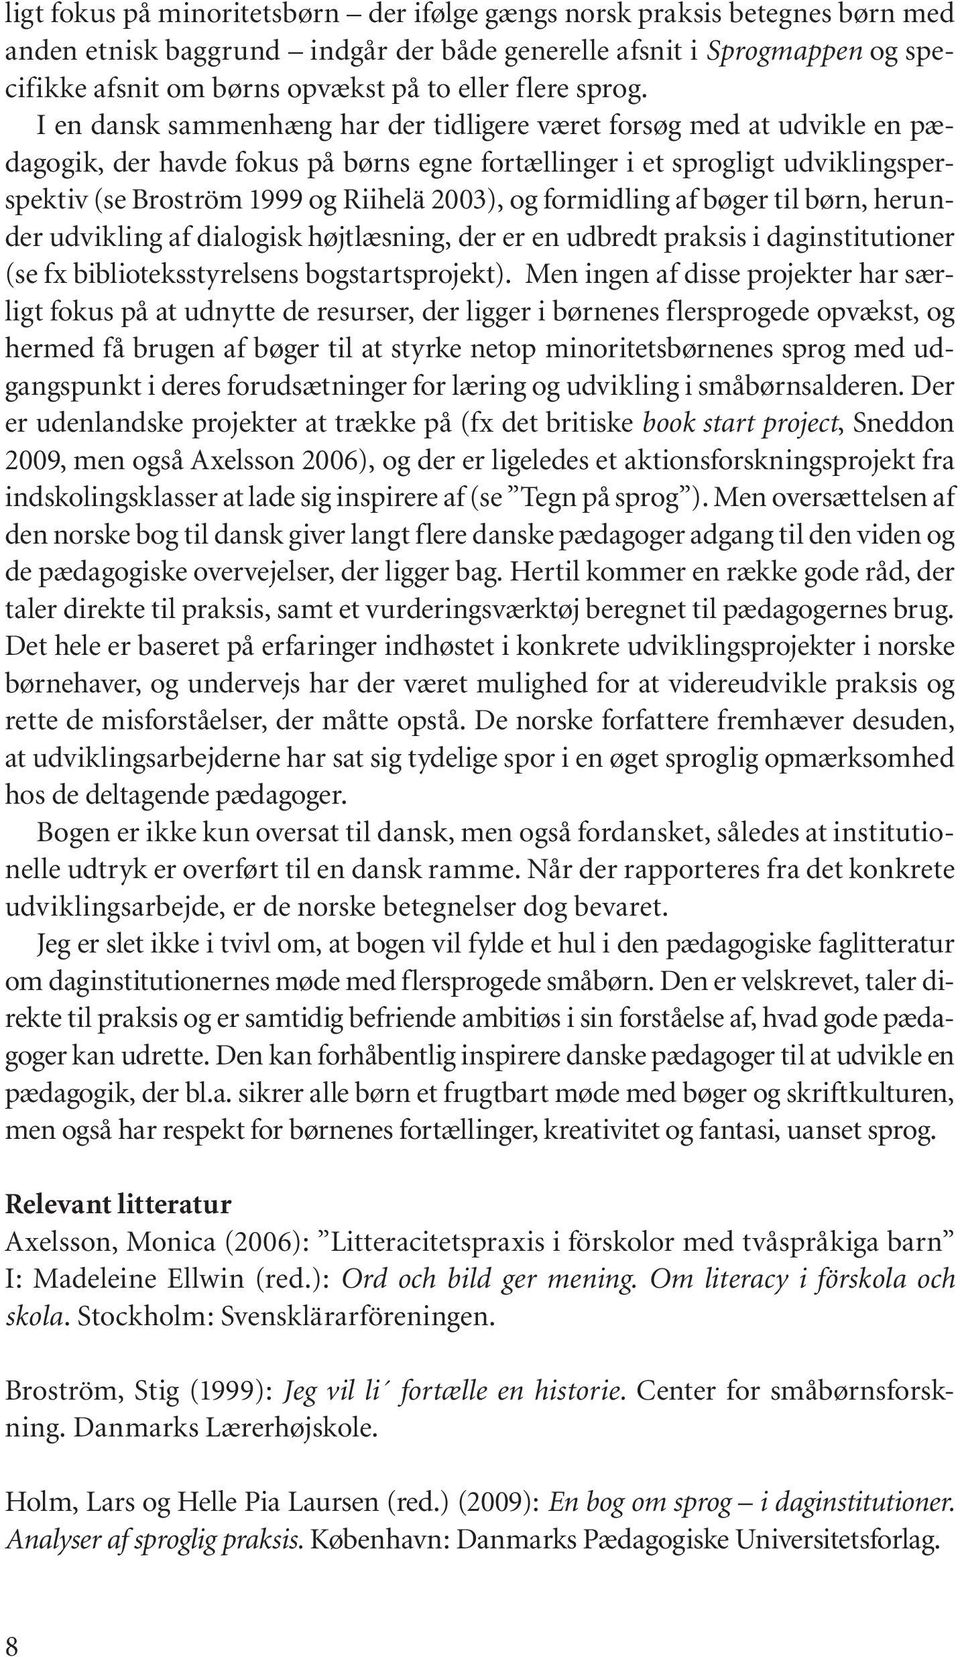 I en dansk sammenhæng har der tidligere været forsøg med at udvikle en pædagogik, der havde fokus på børns egne fortællinger i et sprogligt udviklingsperspektiv (se Broström 1999 og Riihelä 2003), og